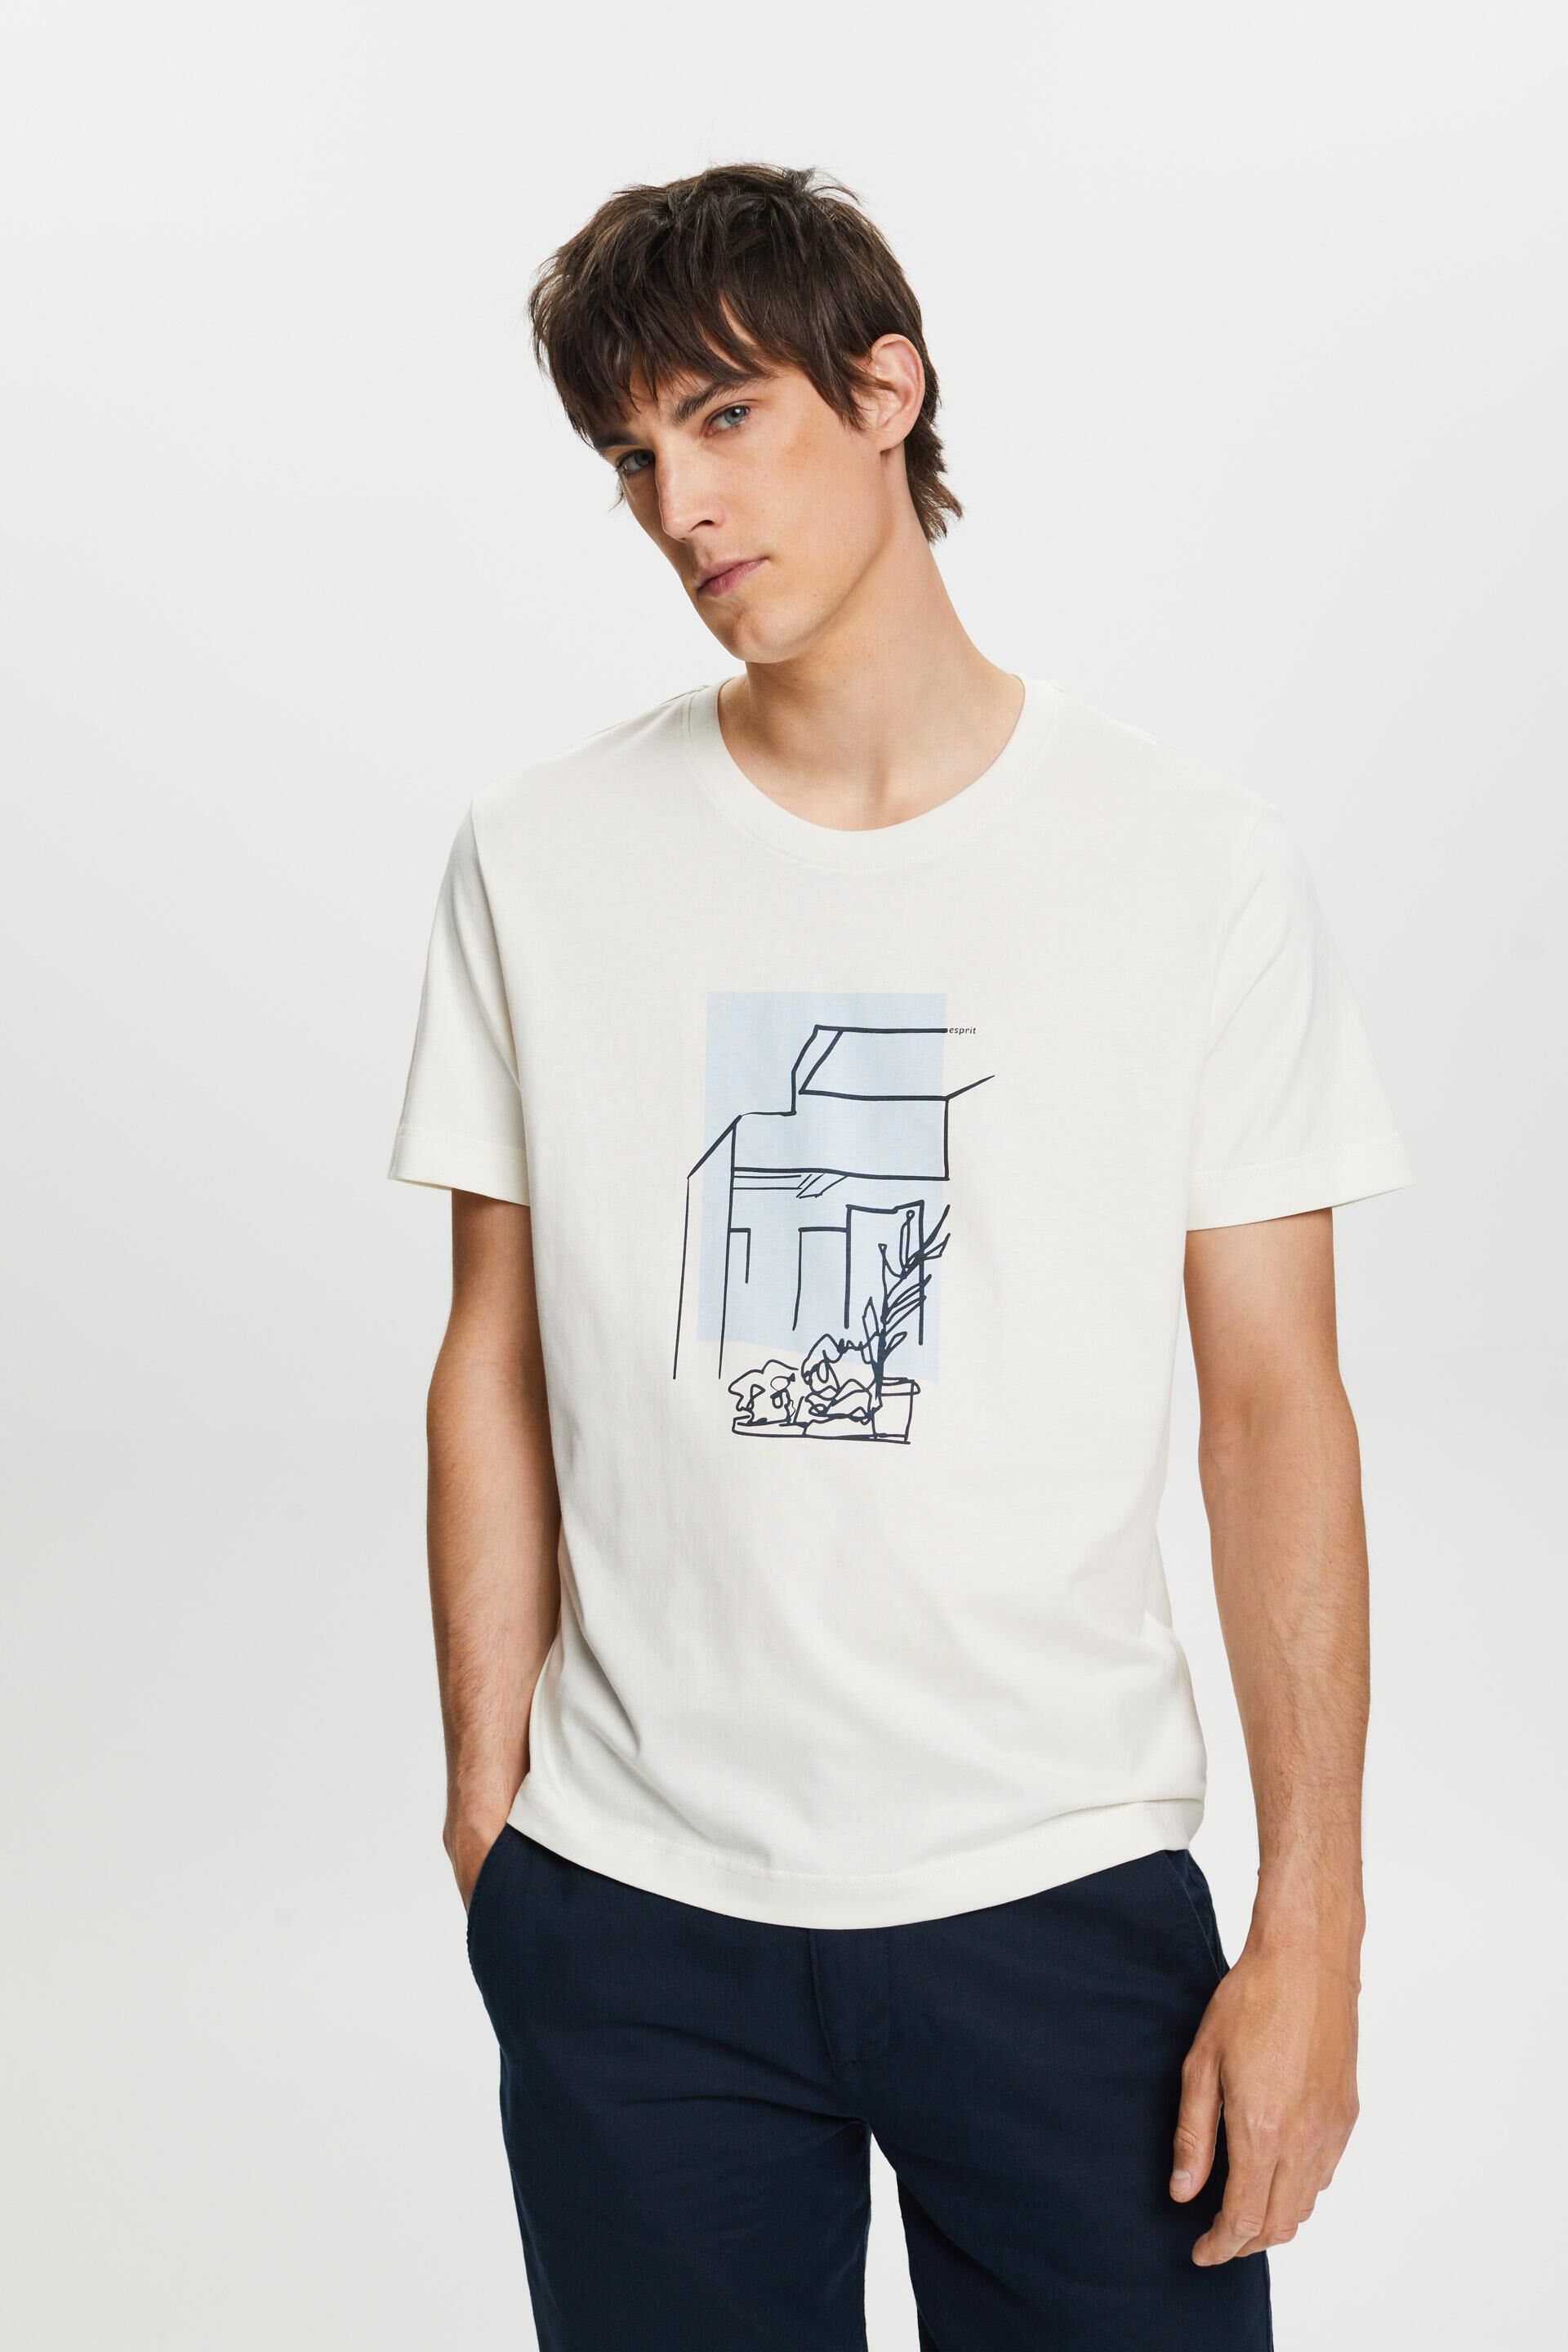 Esprit 100% cotton print, with front T-shirt